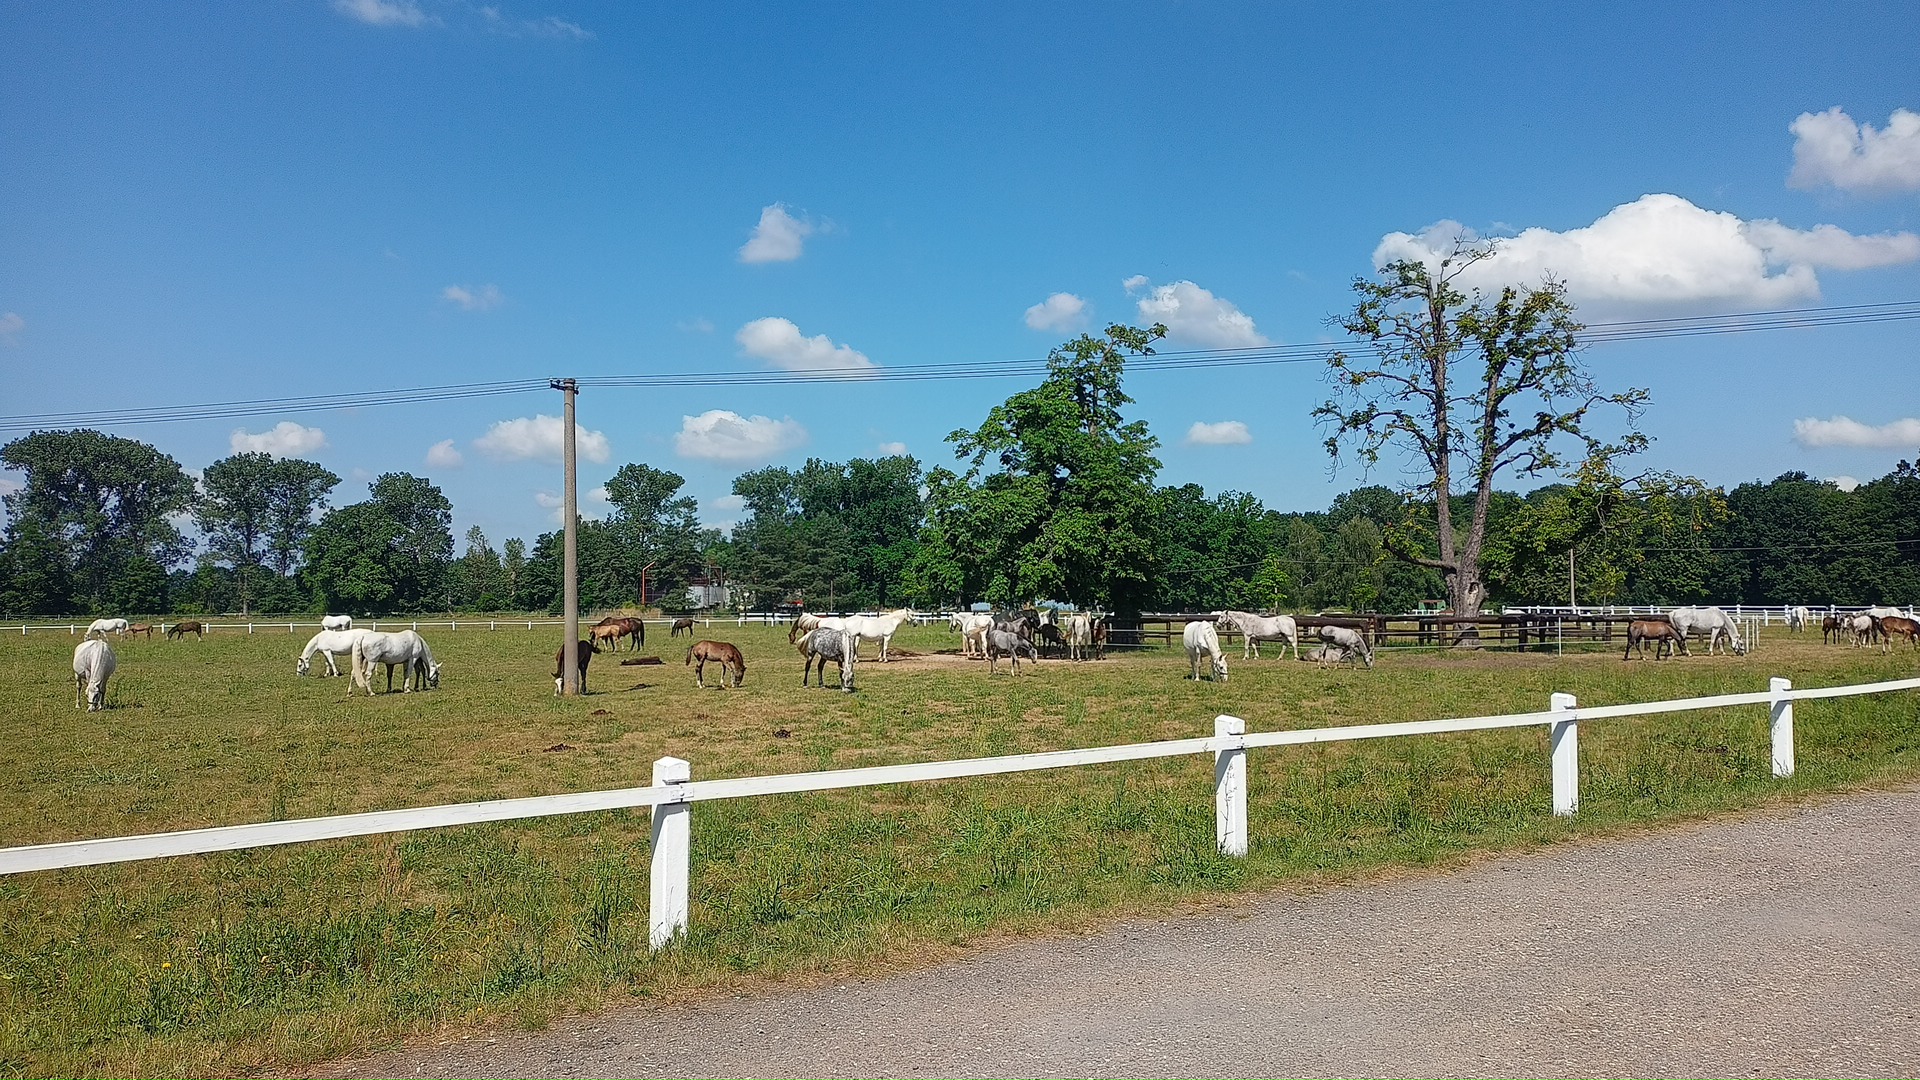 „Hejno“ koní u Hřebčína v Kladrubech. Kladruby (a jejich koně), znám jen jako pojem. Poprvé jsem je viděl naživo. Je to tam moc hezké.